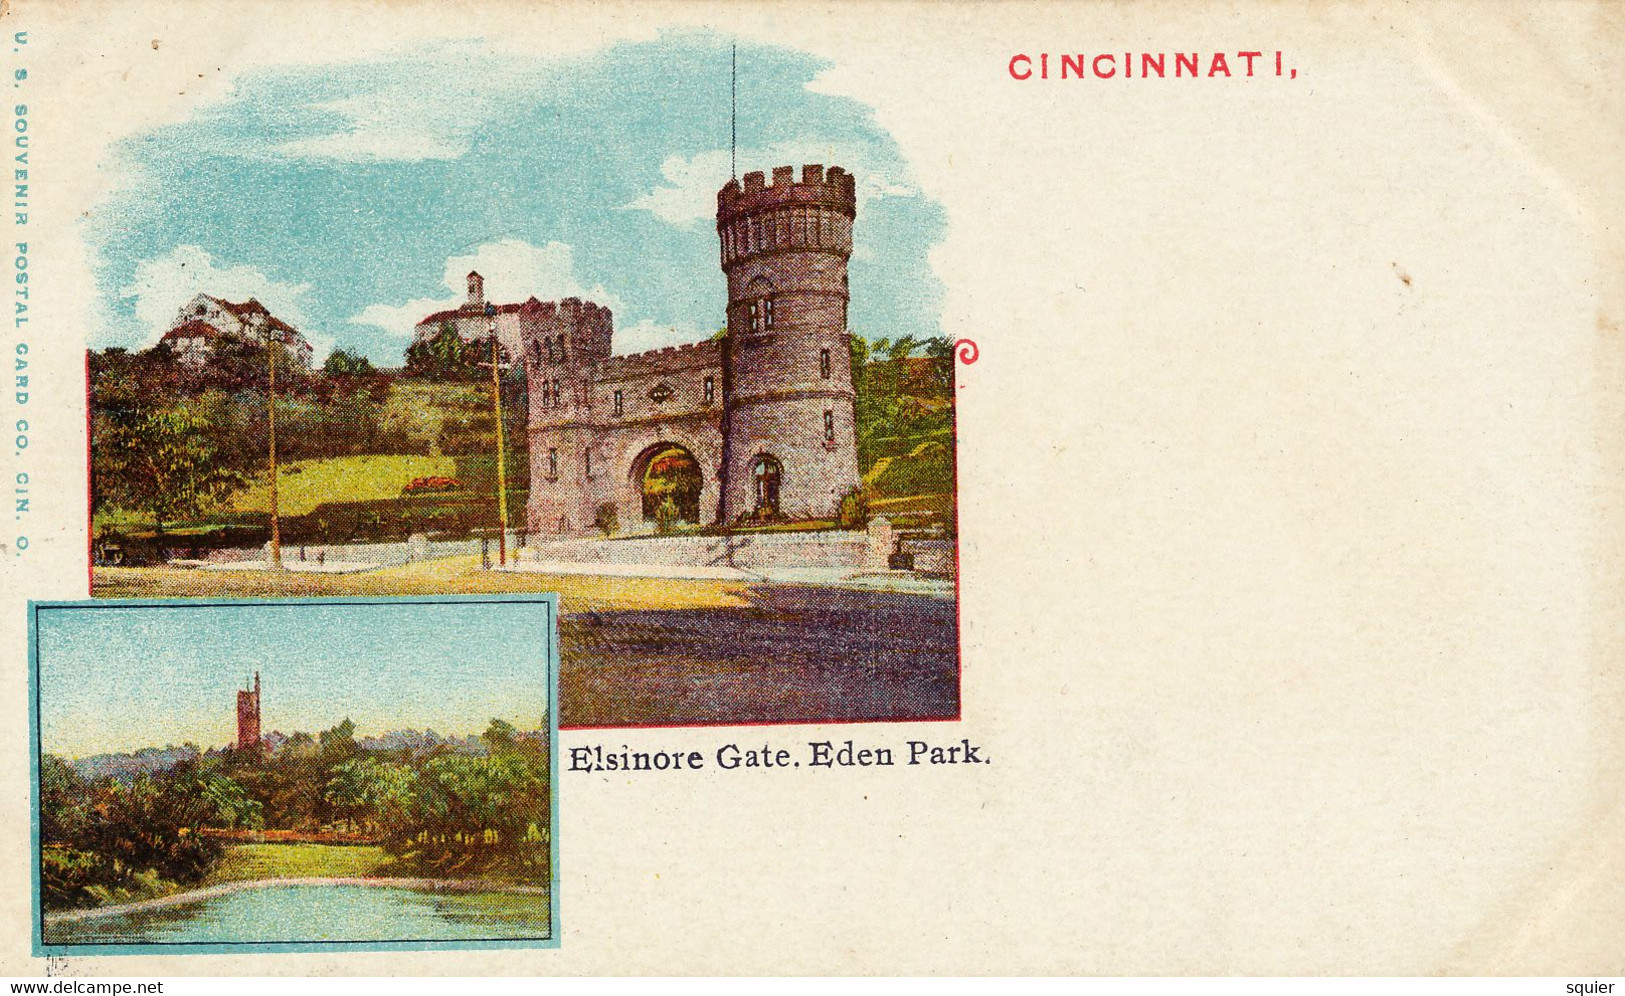 Elsinore Gate, Eden Park - Cincinnati